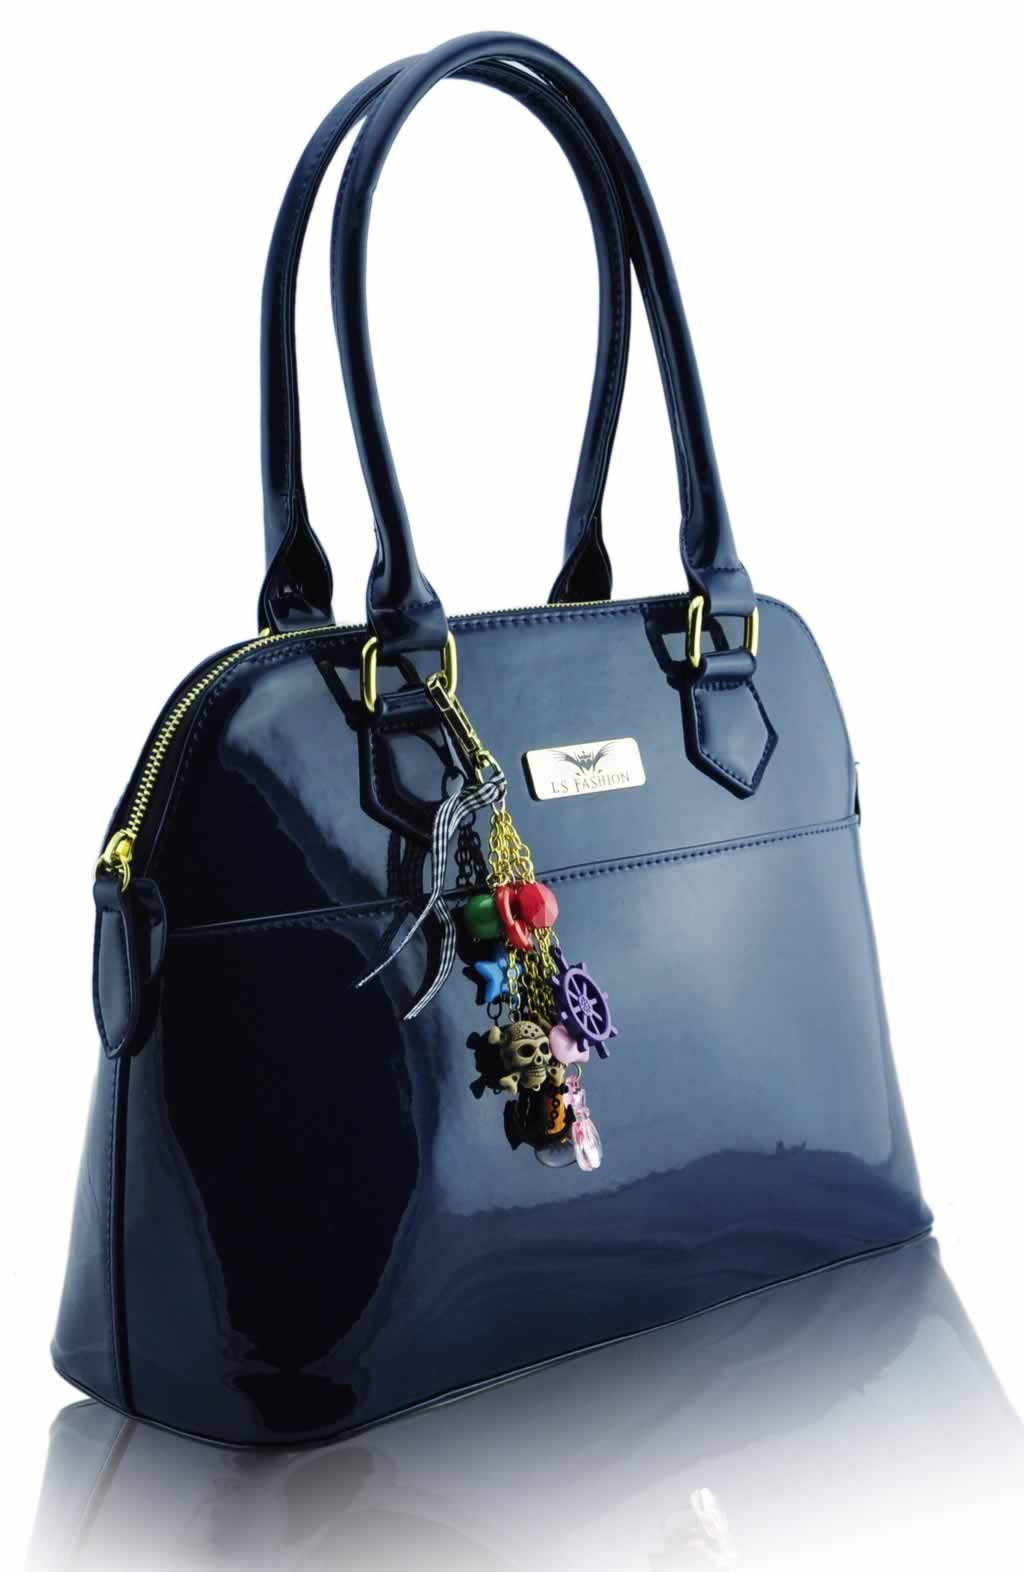 Home HANDBAGS LS6001 - Navy Patent Tote Fashion Handbag